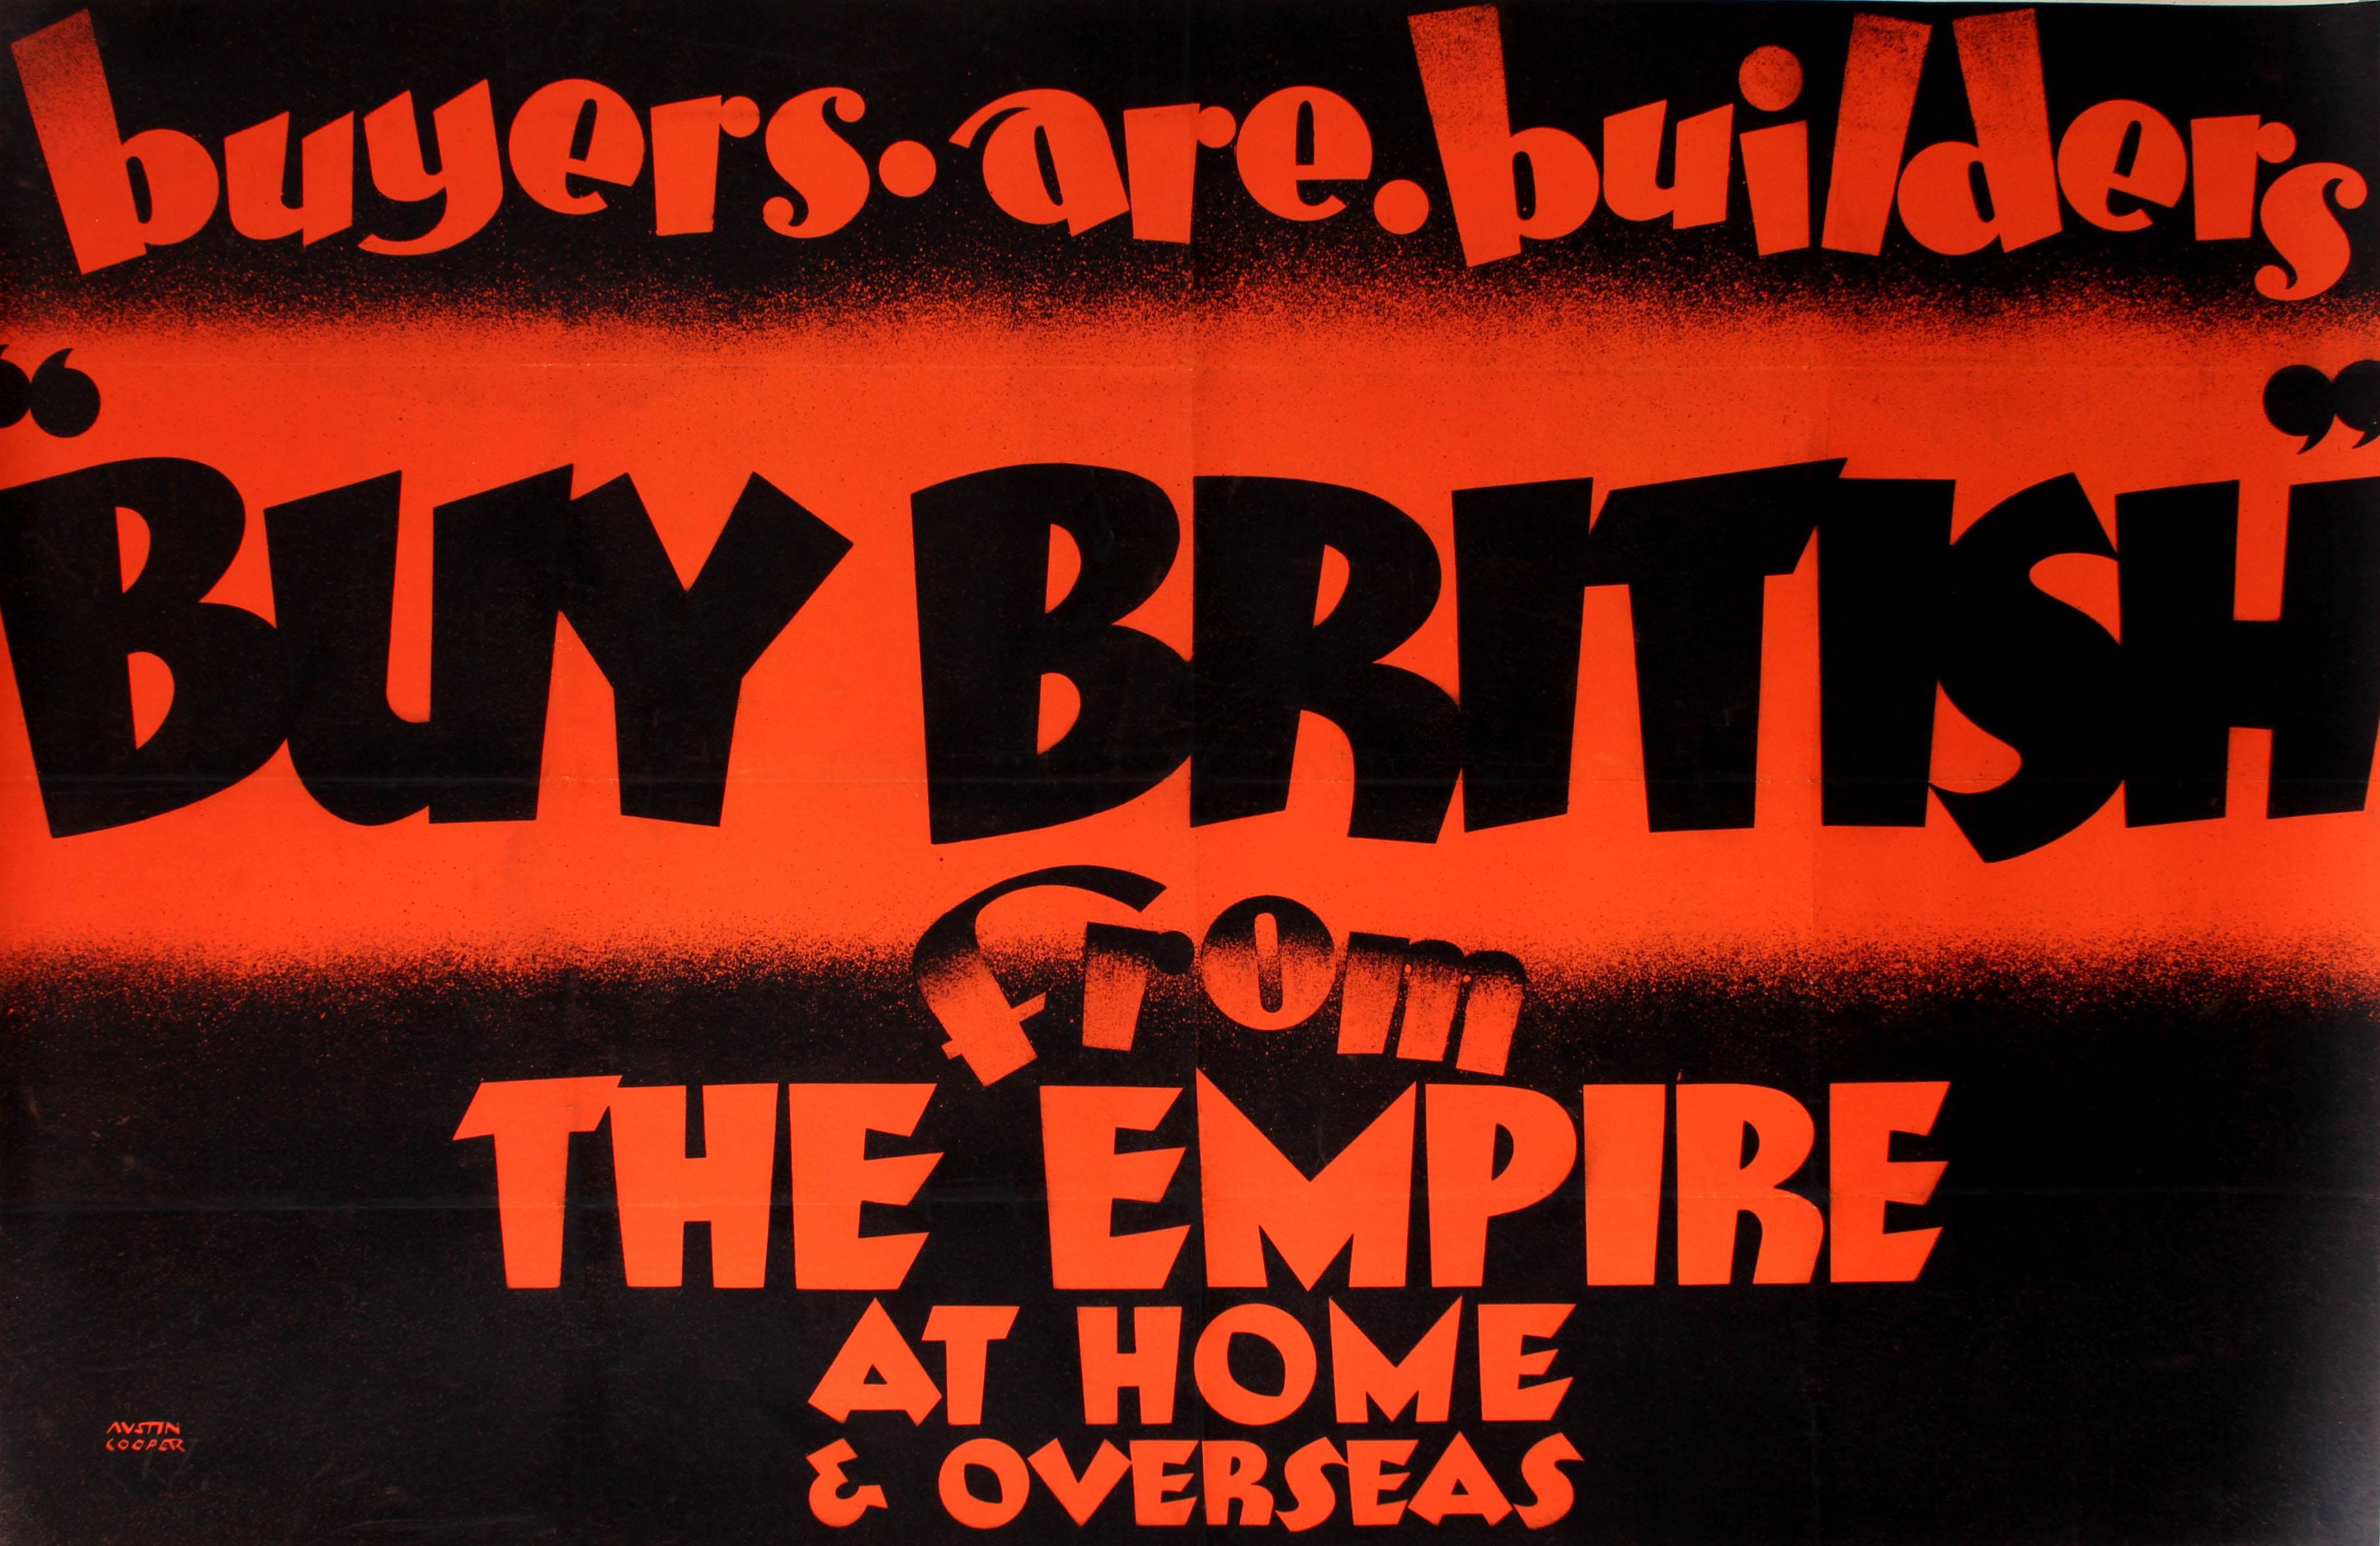 Affiche publicitaire originale publiée par l'Empire Marketing Board pour encourager les citoyens britanniques à aider leur propre économie à la suite de la Grande Dépression en Amérique en achetant des produits britanniques. Cette superbe affiche